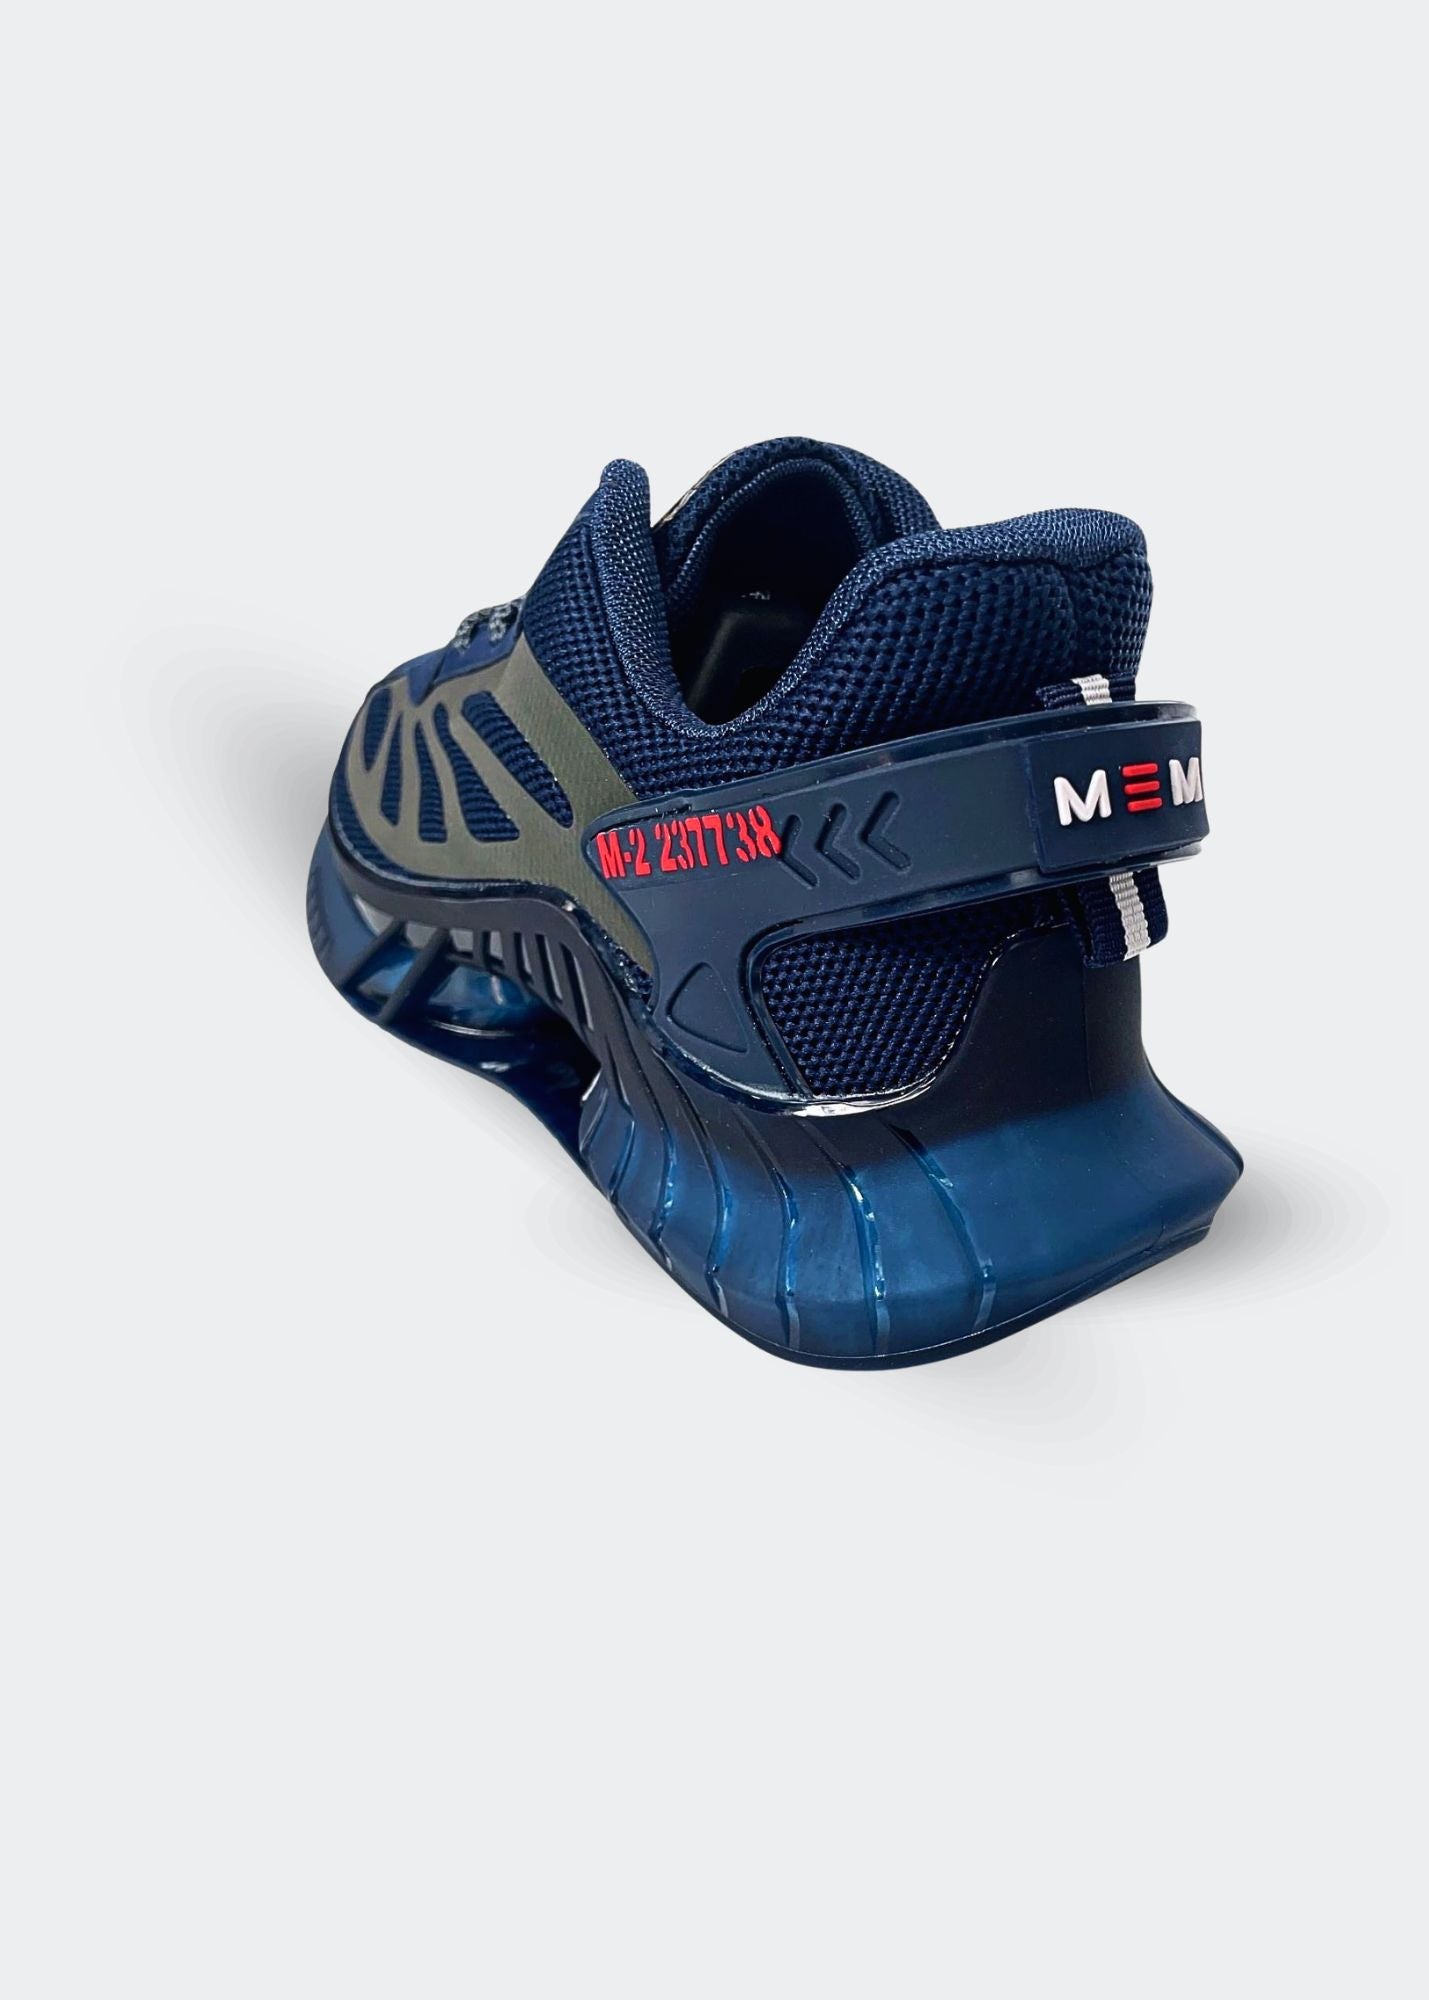 MEM Retro-Reflective Gym Shoes Navy Blue